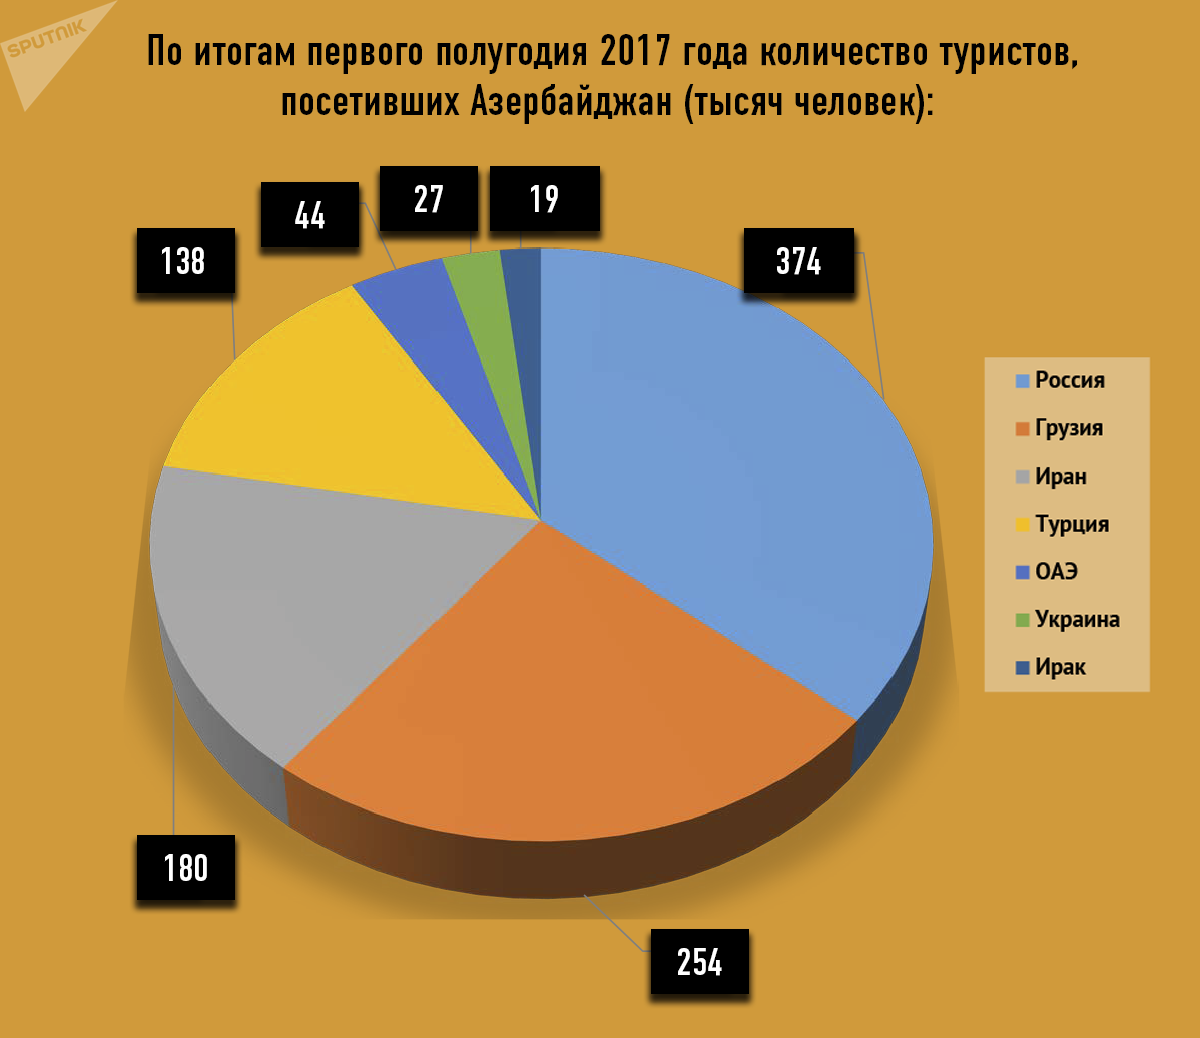 Количество туристов, посетивших Азербайджан в первой половине 2017 года